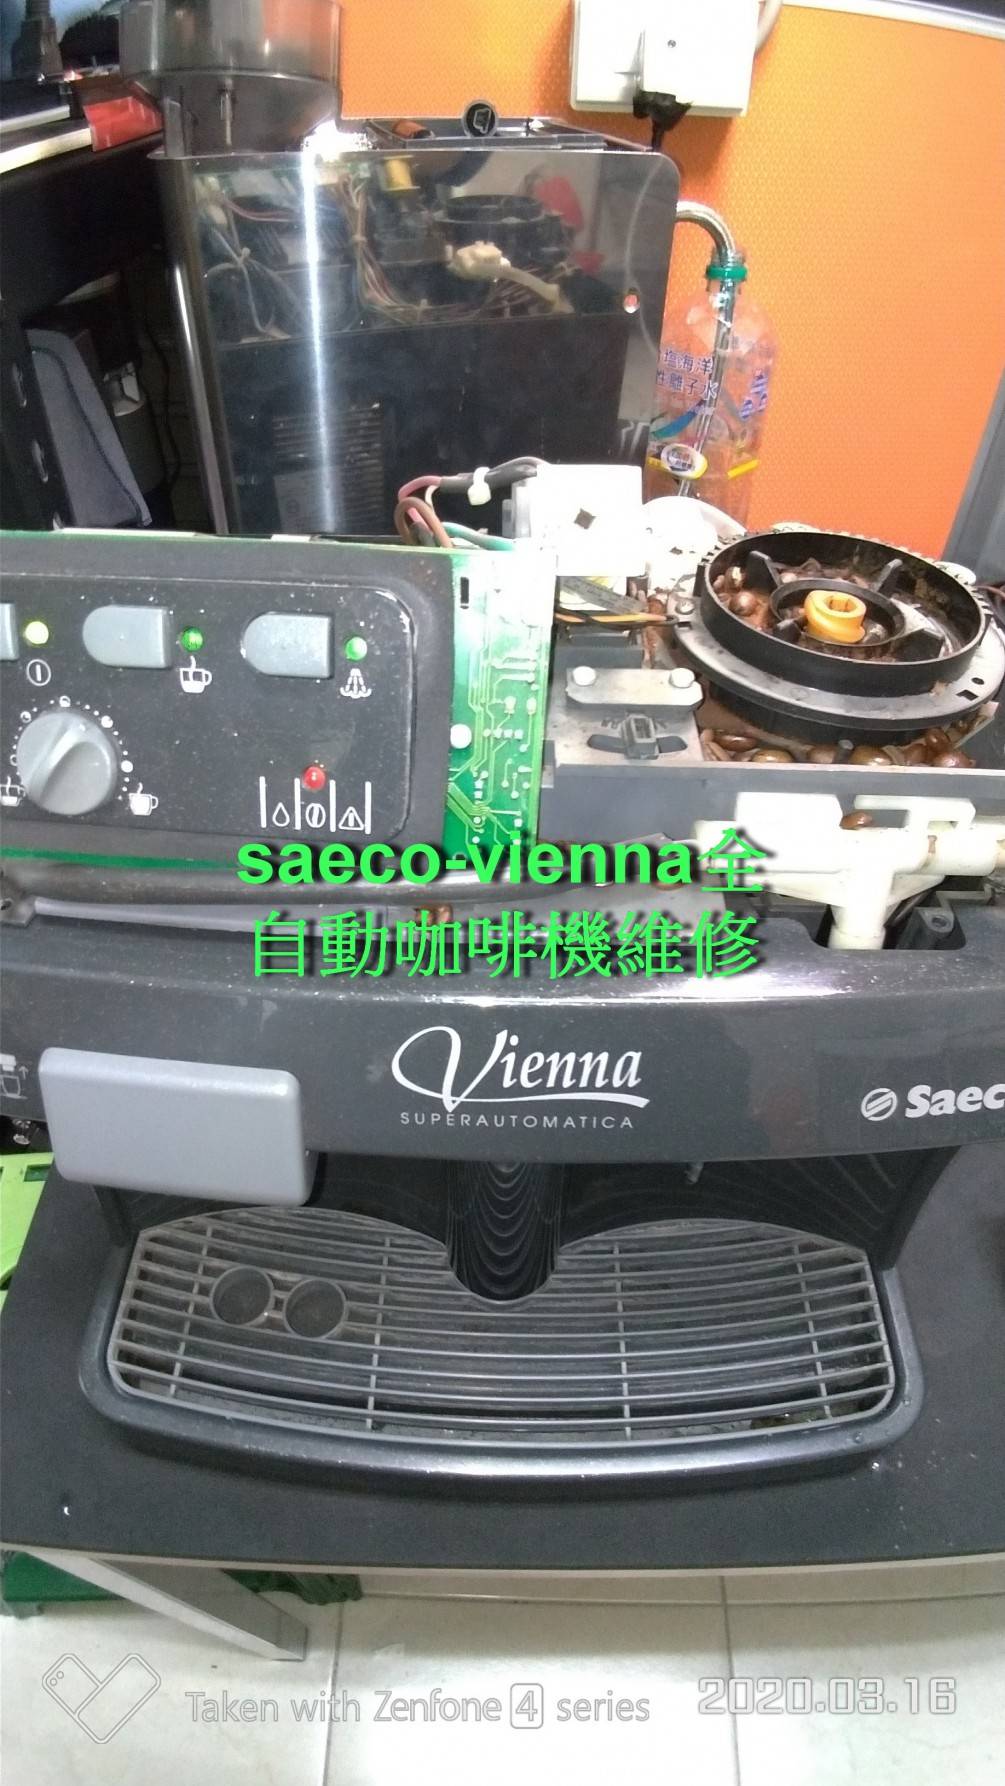 台中客戶維修.saeco-vienna全自動咖啡機.無法磨豆.大保養維修維修